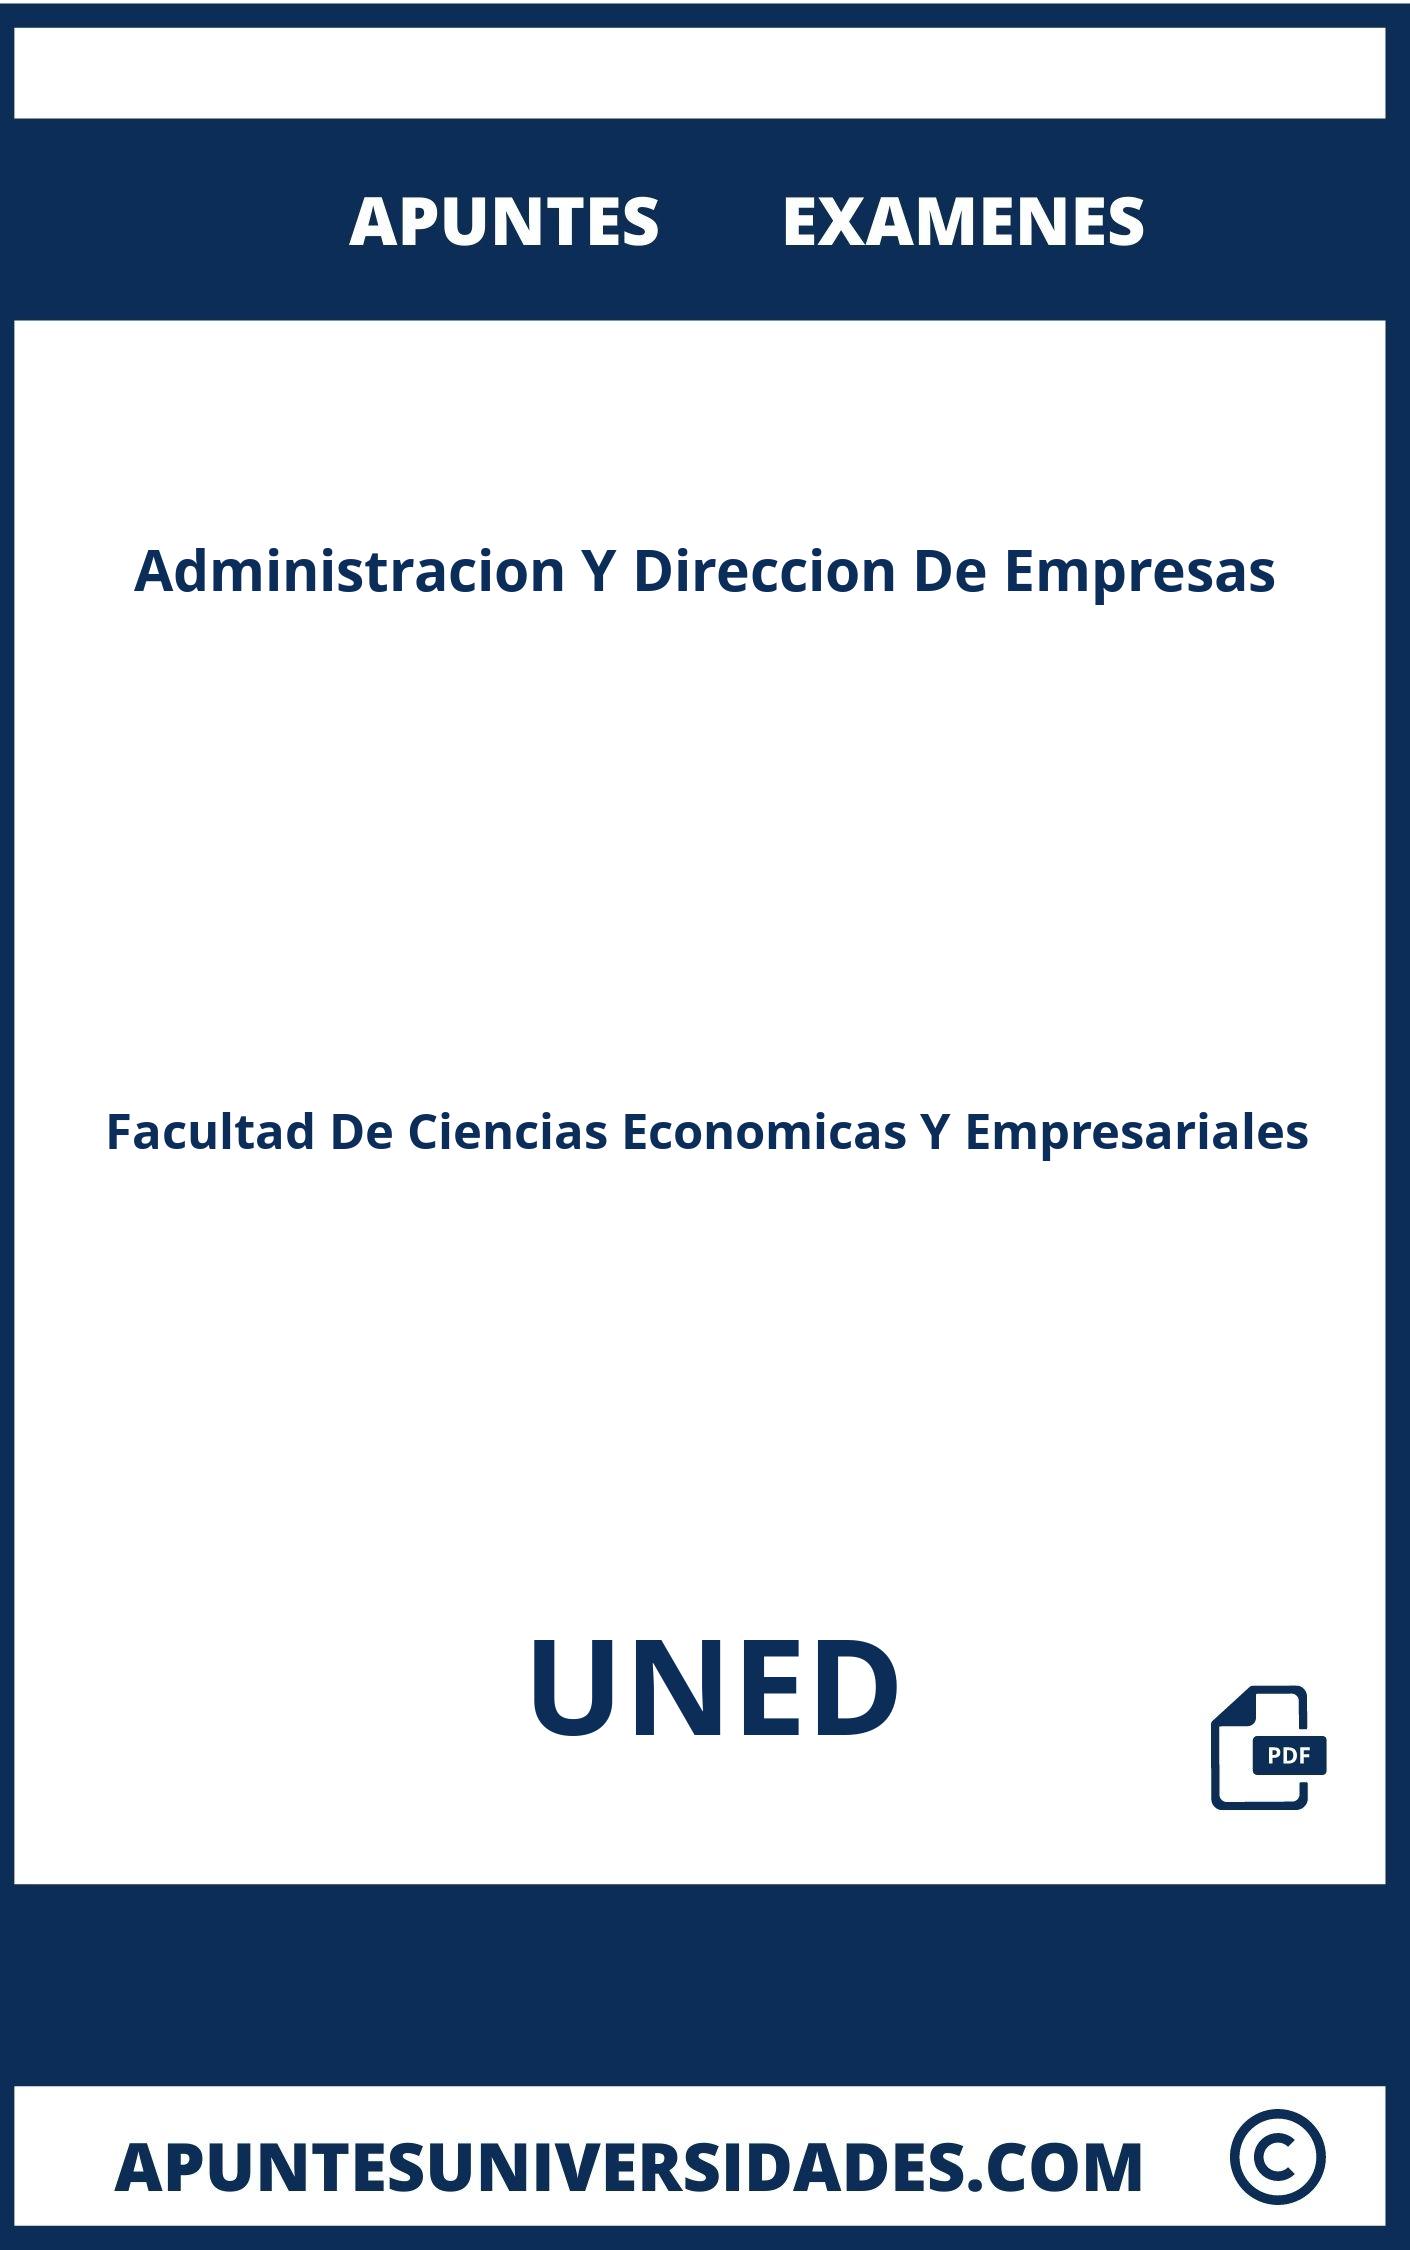 Examenes Apuntes Administracion Y Direccion De Empresas UNED